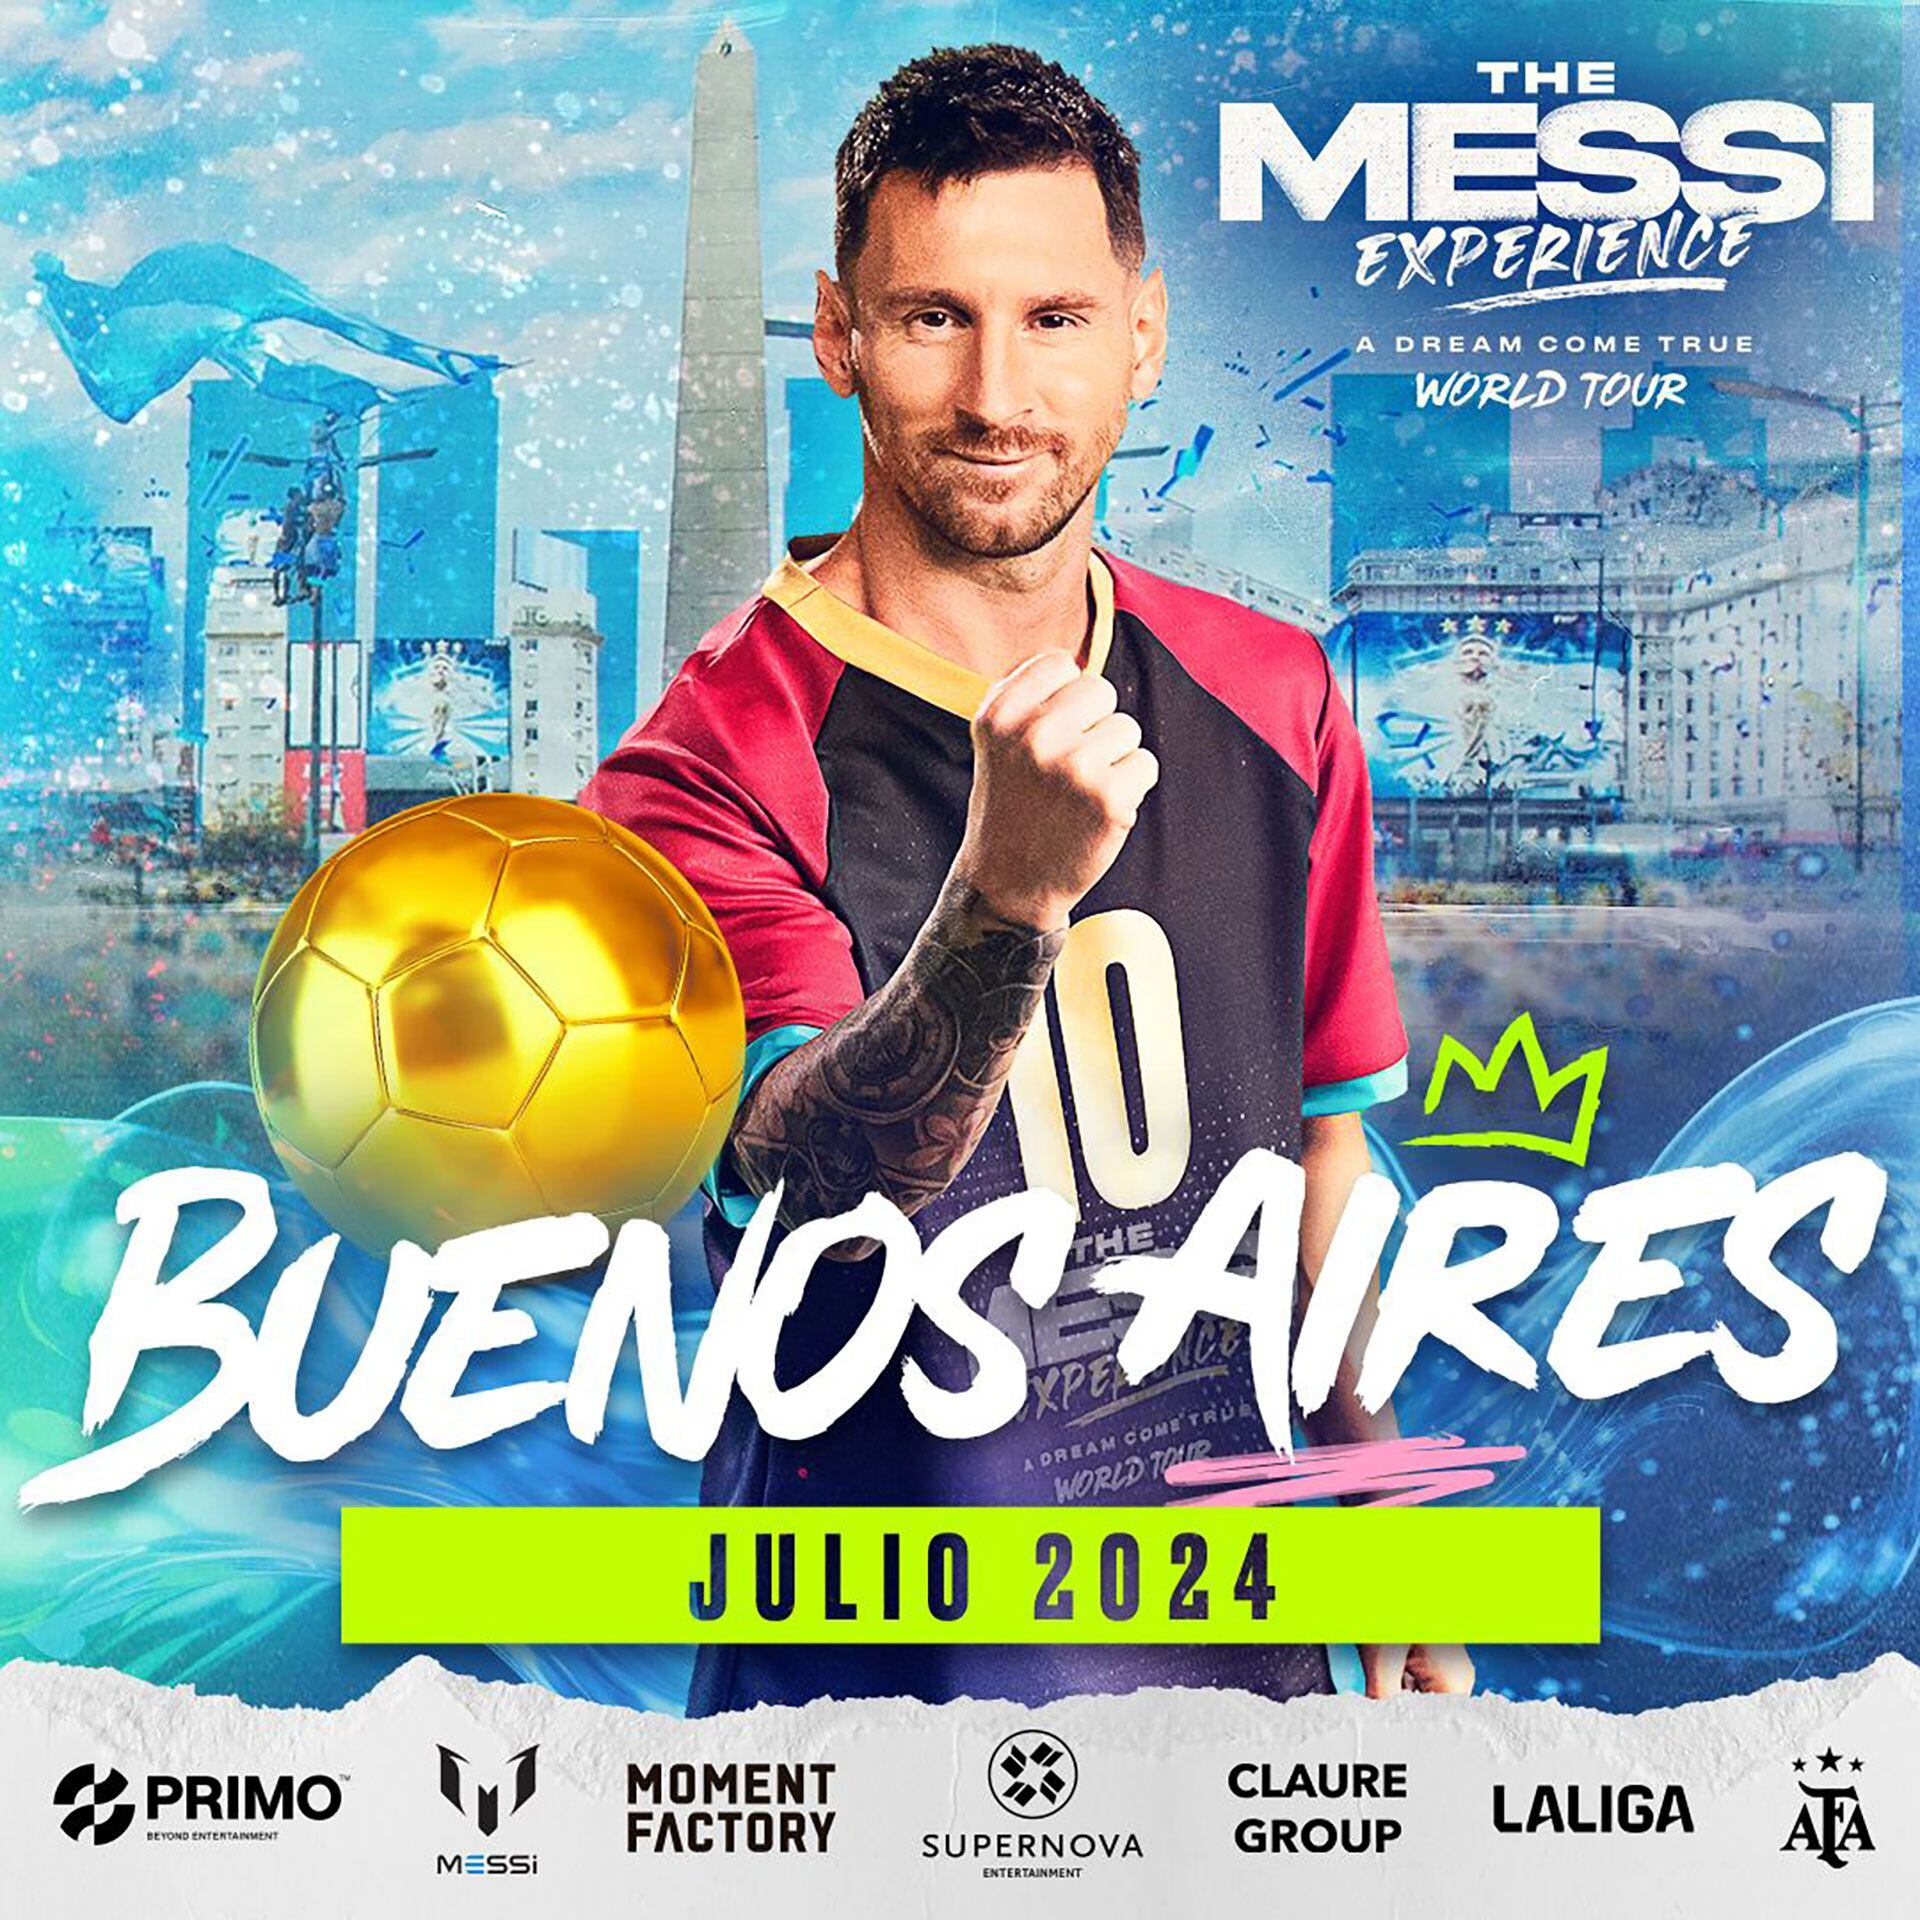 La Experiencia Messi llega a la Argentina